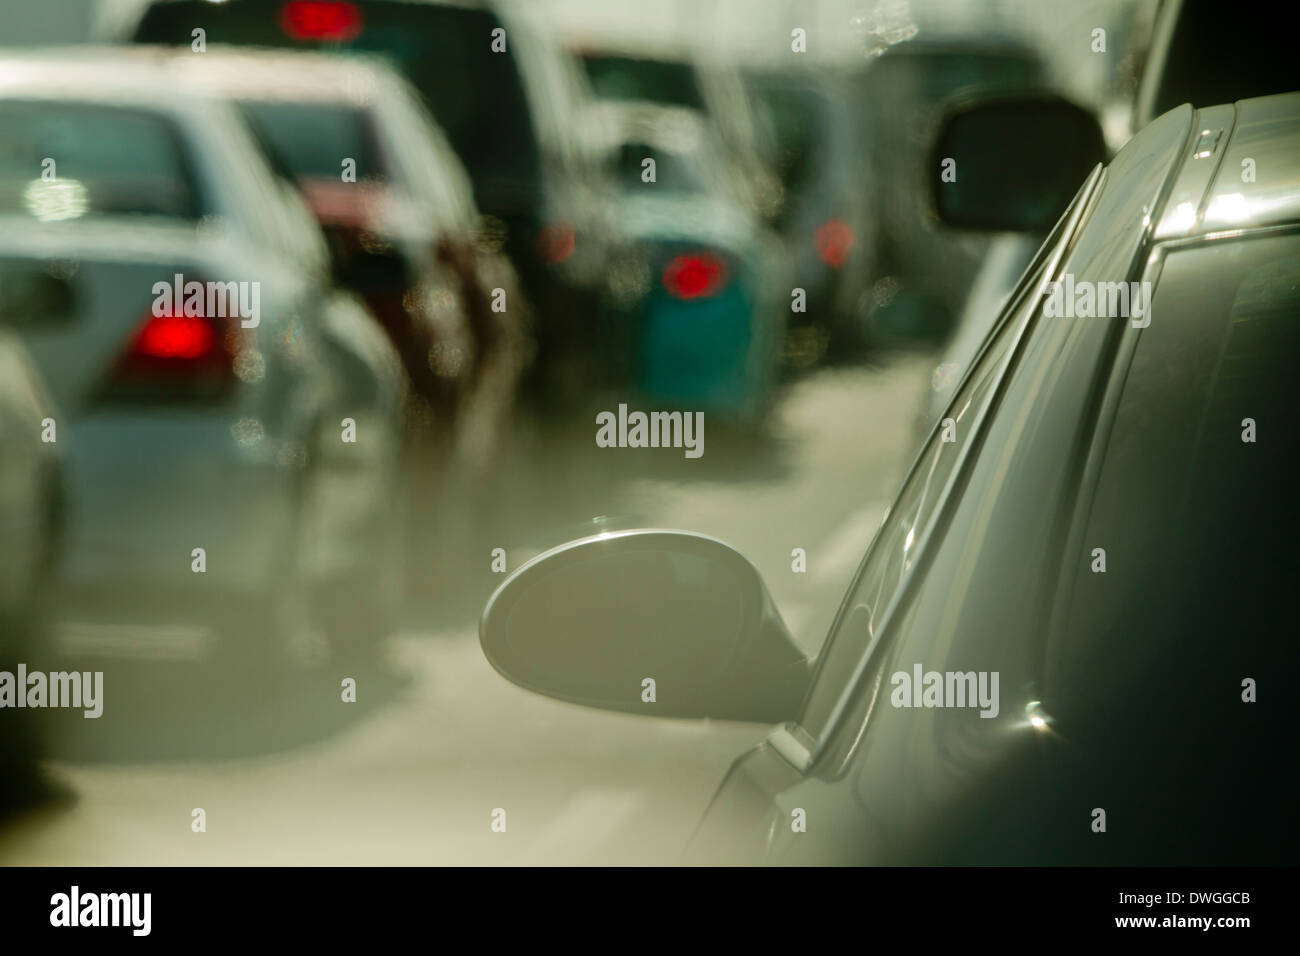 Katar Doha heißen Traffic Jam staubigen Warteschlange Autos Stockfoto